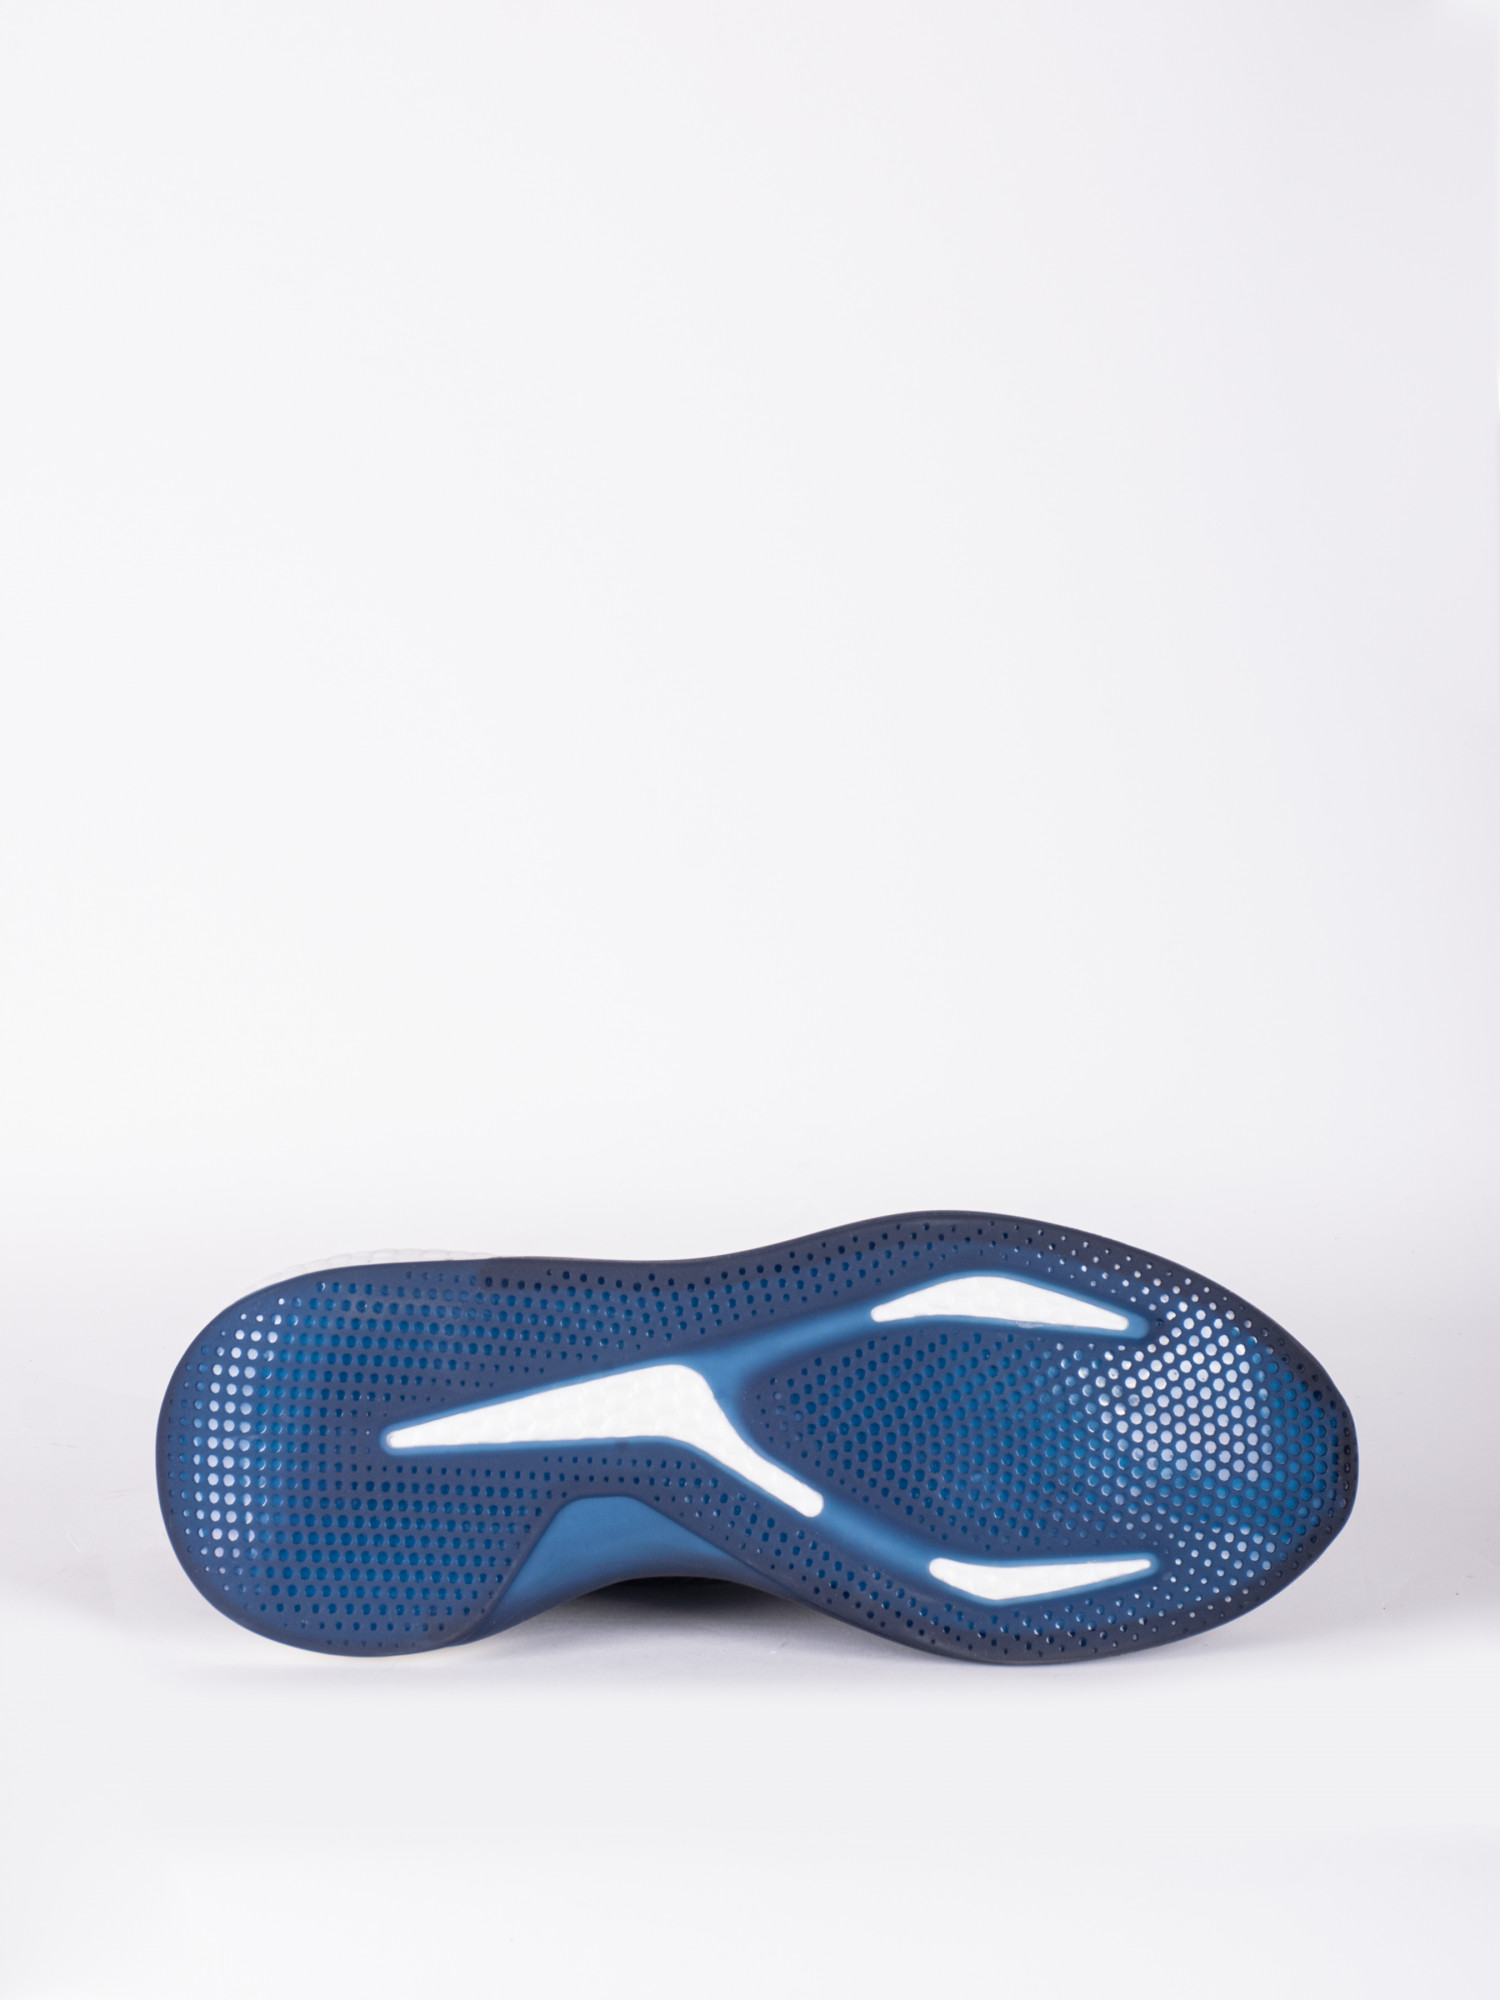 Кросівки чоловічі Radder Neman темно-сині 402205-450 изображение 5